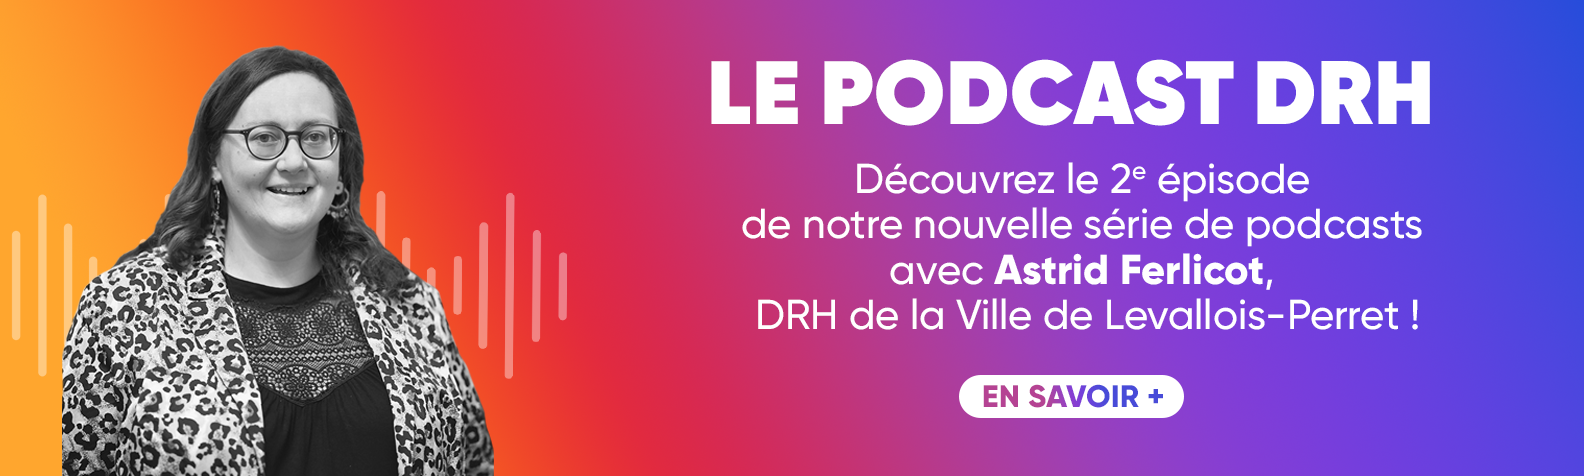 Découvrez le deuxième épisode de notre podcast avec Astrid Ferlicot, DRH de la Ville de Levallois-Perret !